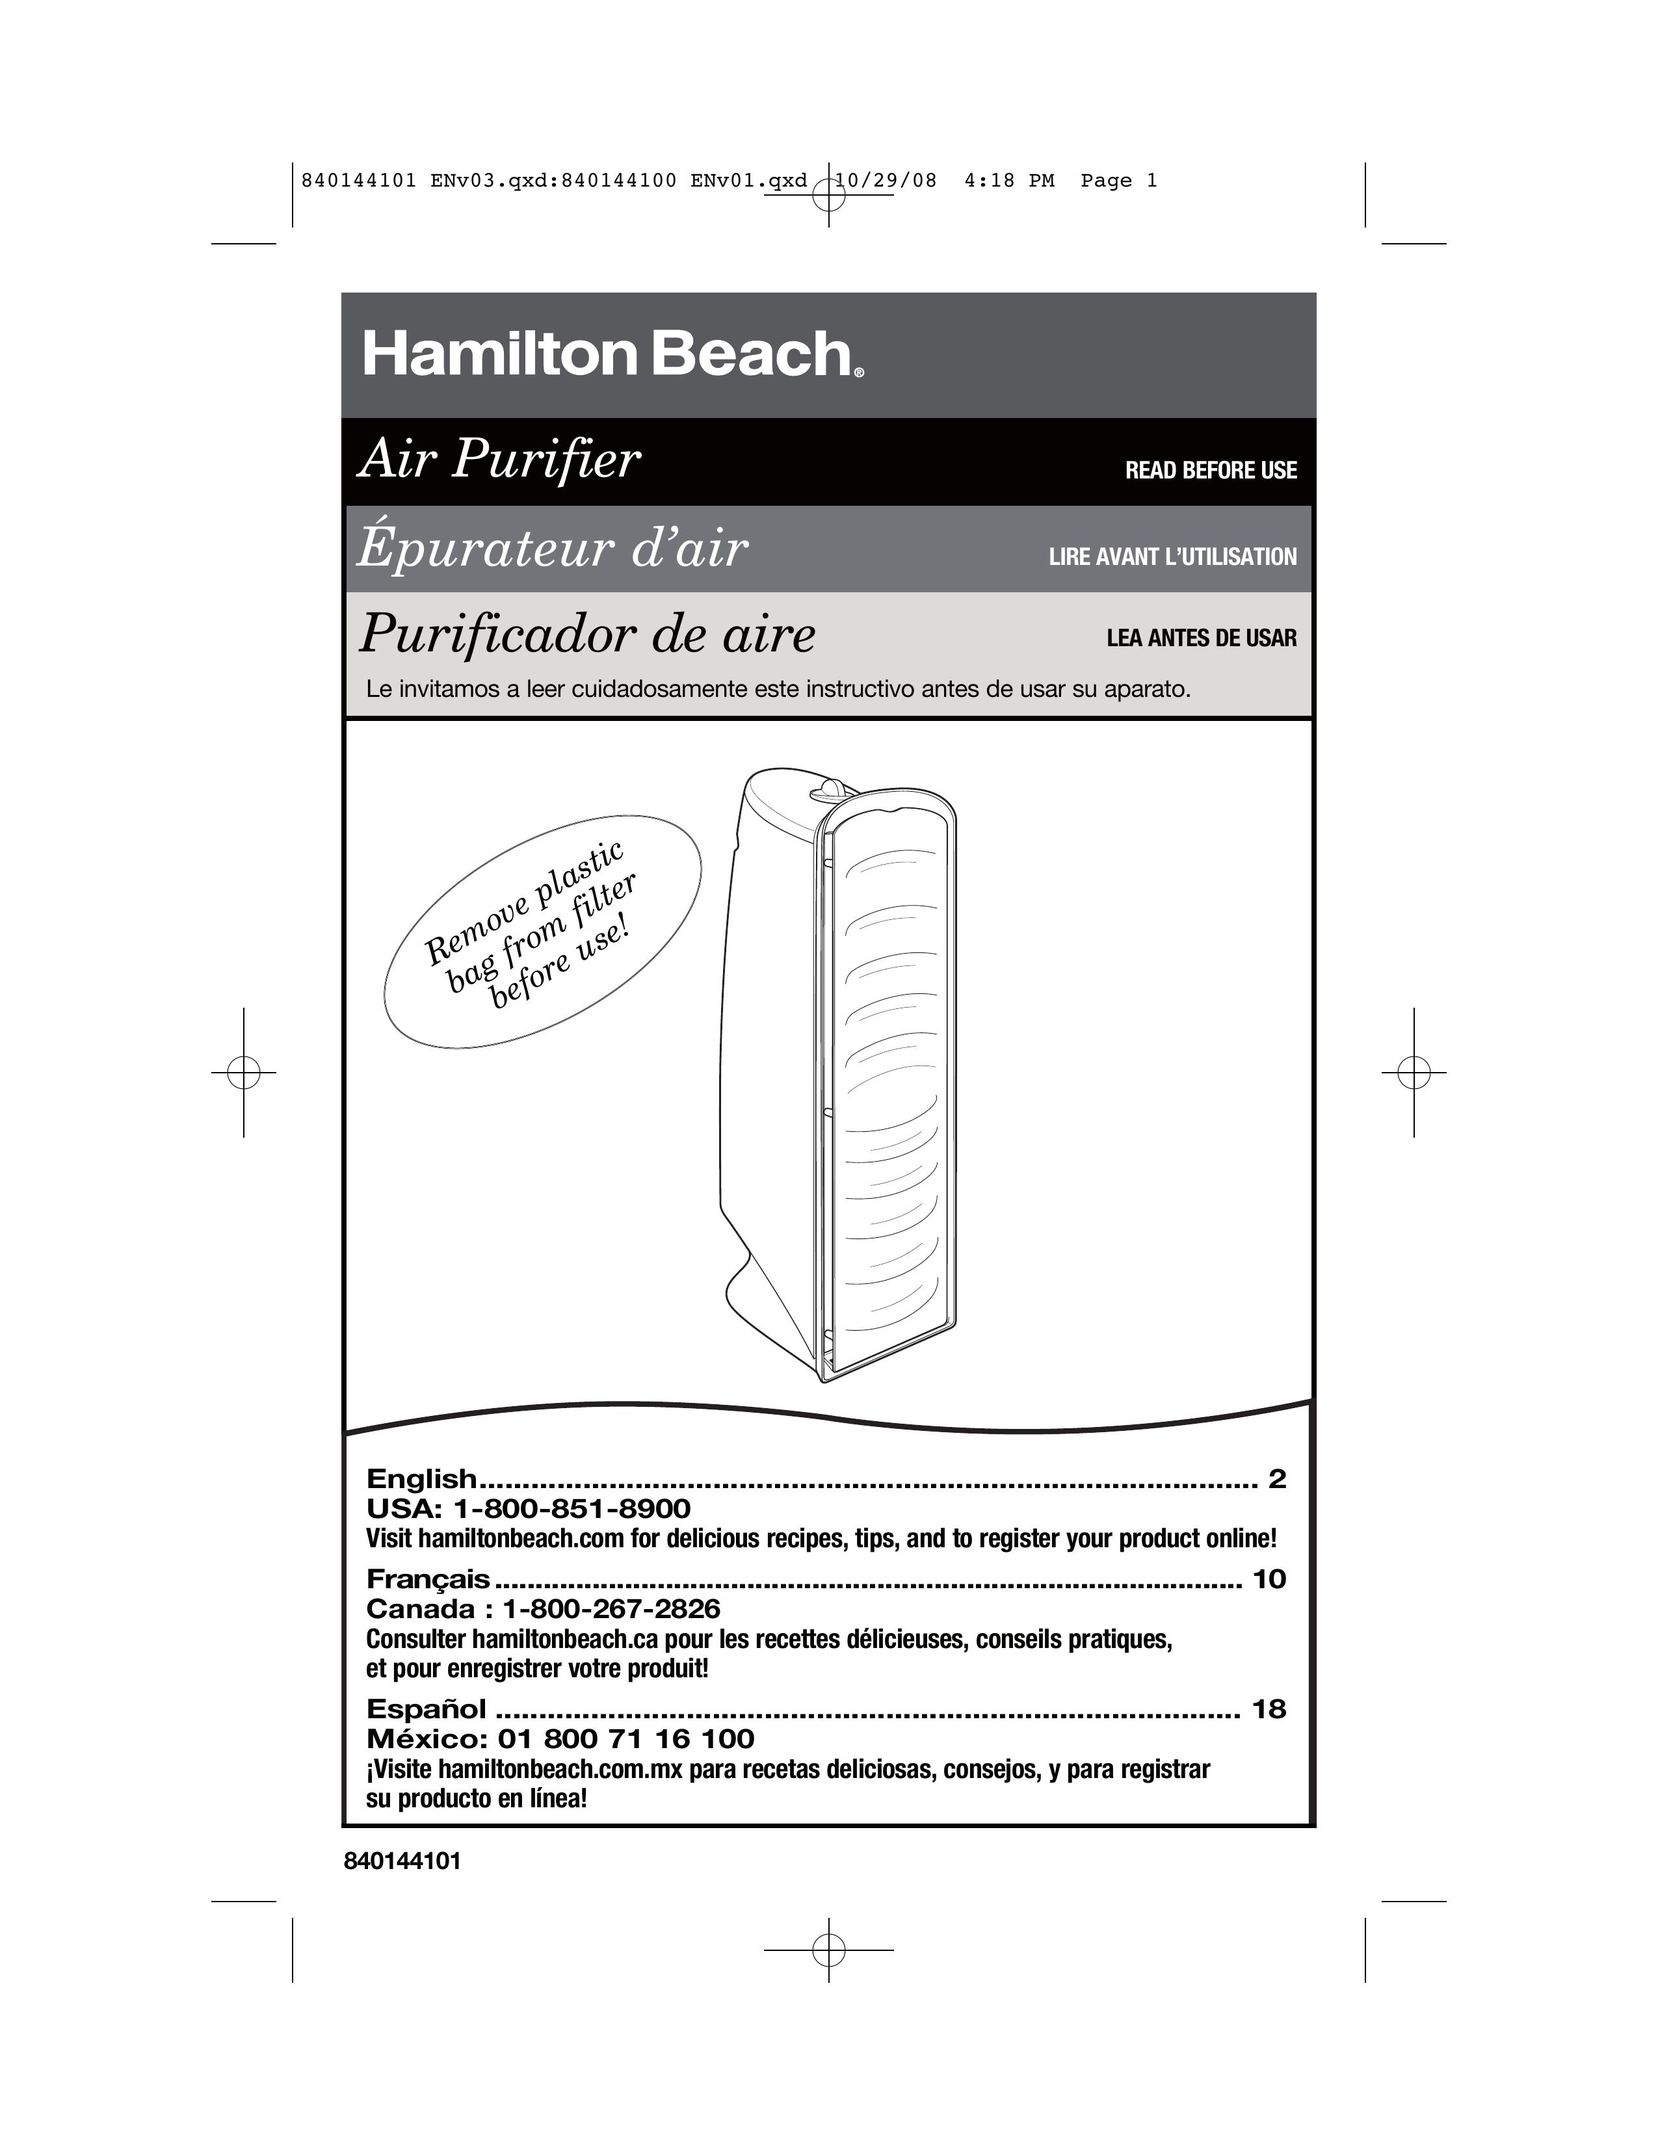 Hamilton Beach 840144101 Air Cleaner User Manual